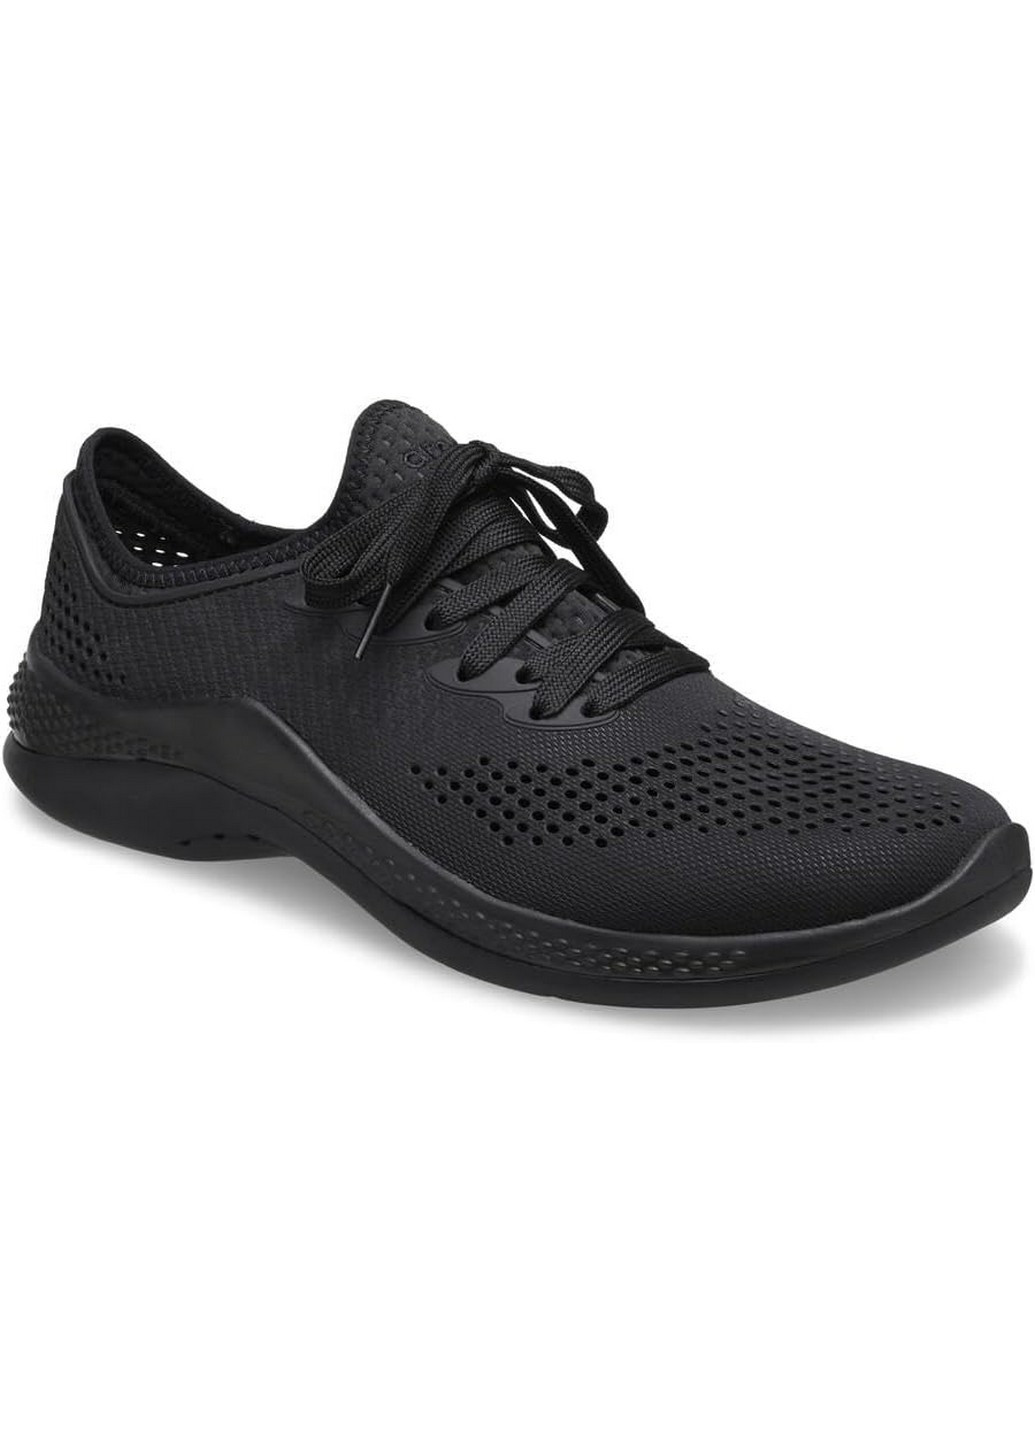 Чорні Осінні кросівки крокс Crocs LiteRide 360 Pacer Black/Black